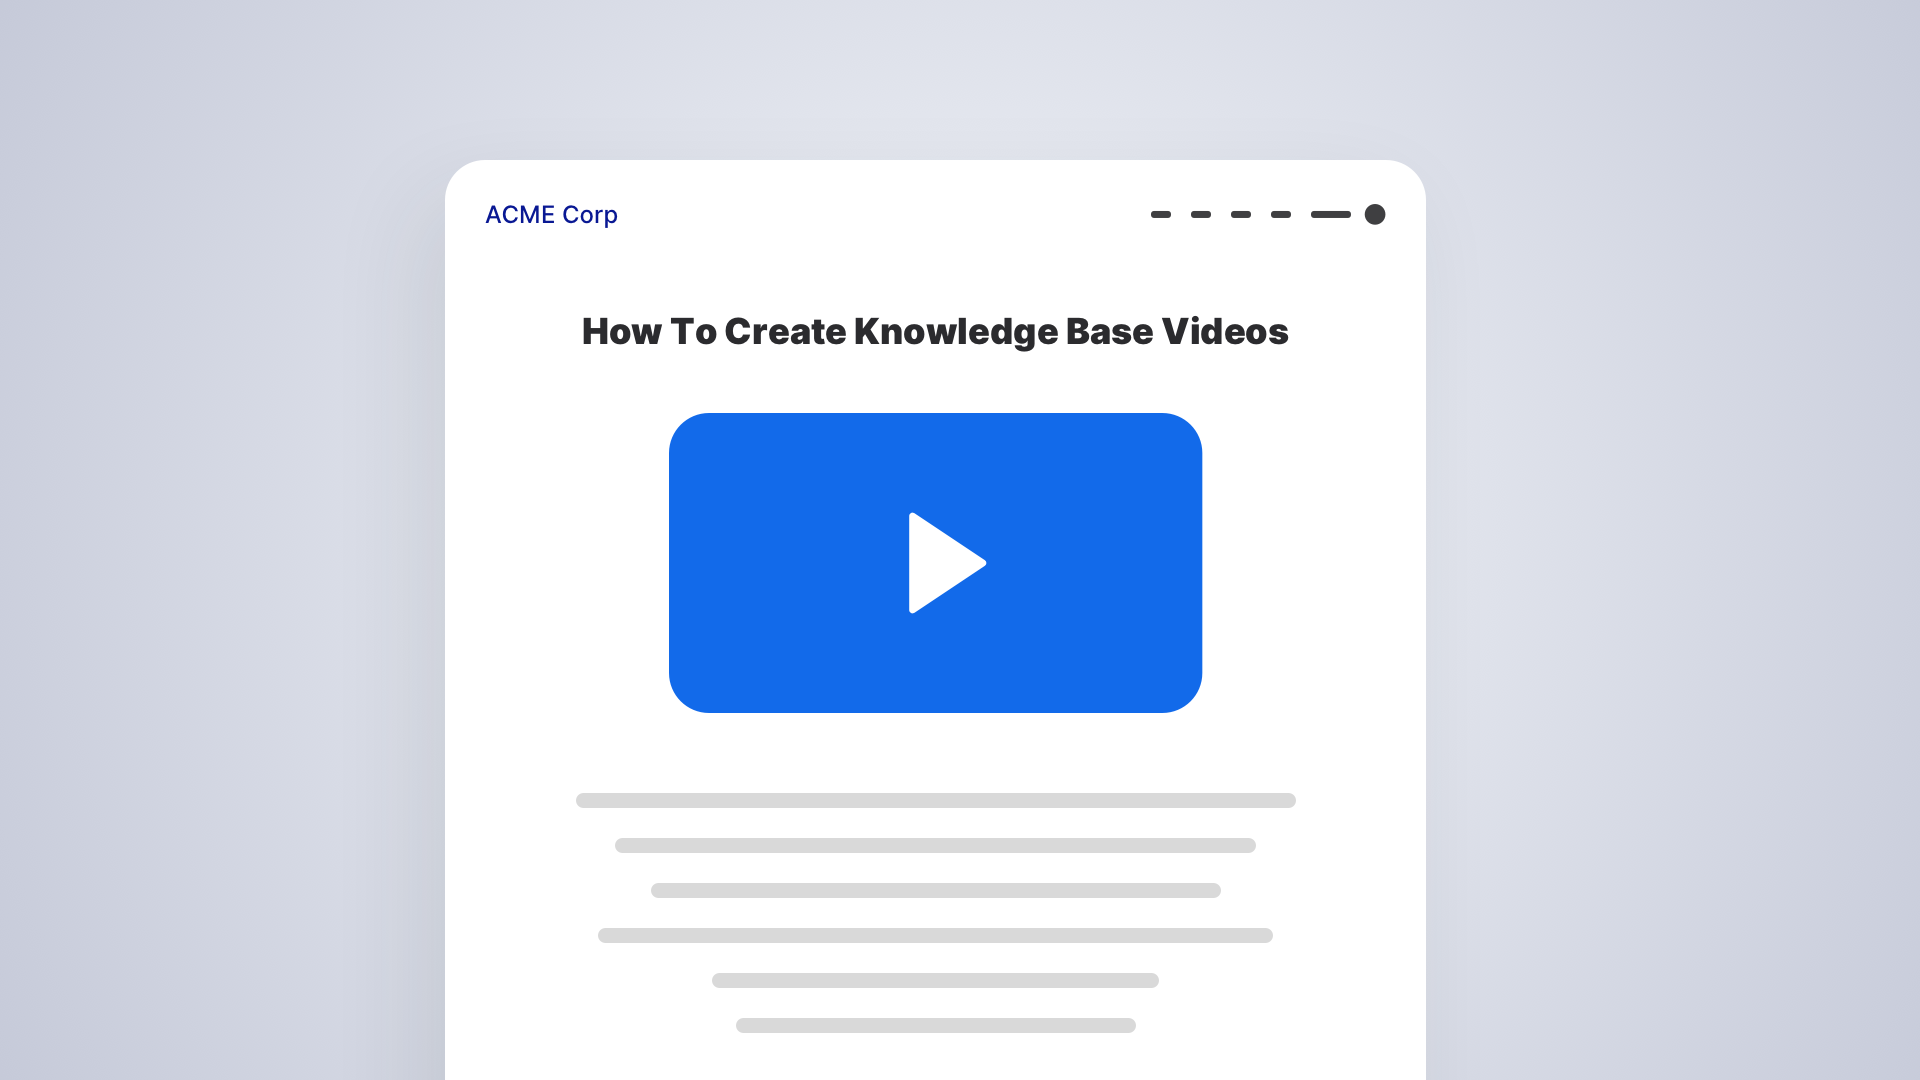 创建知识库视频:通过6个简单步骤创建视频